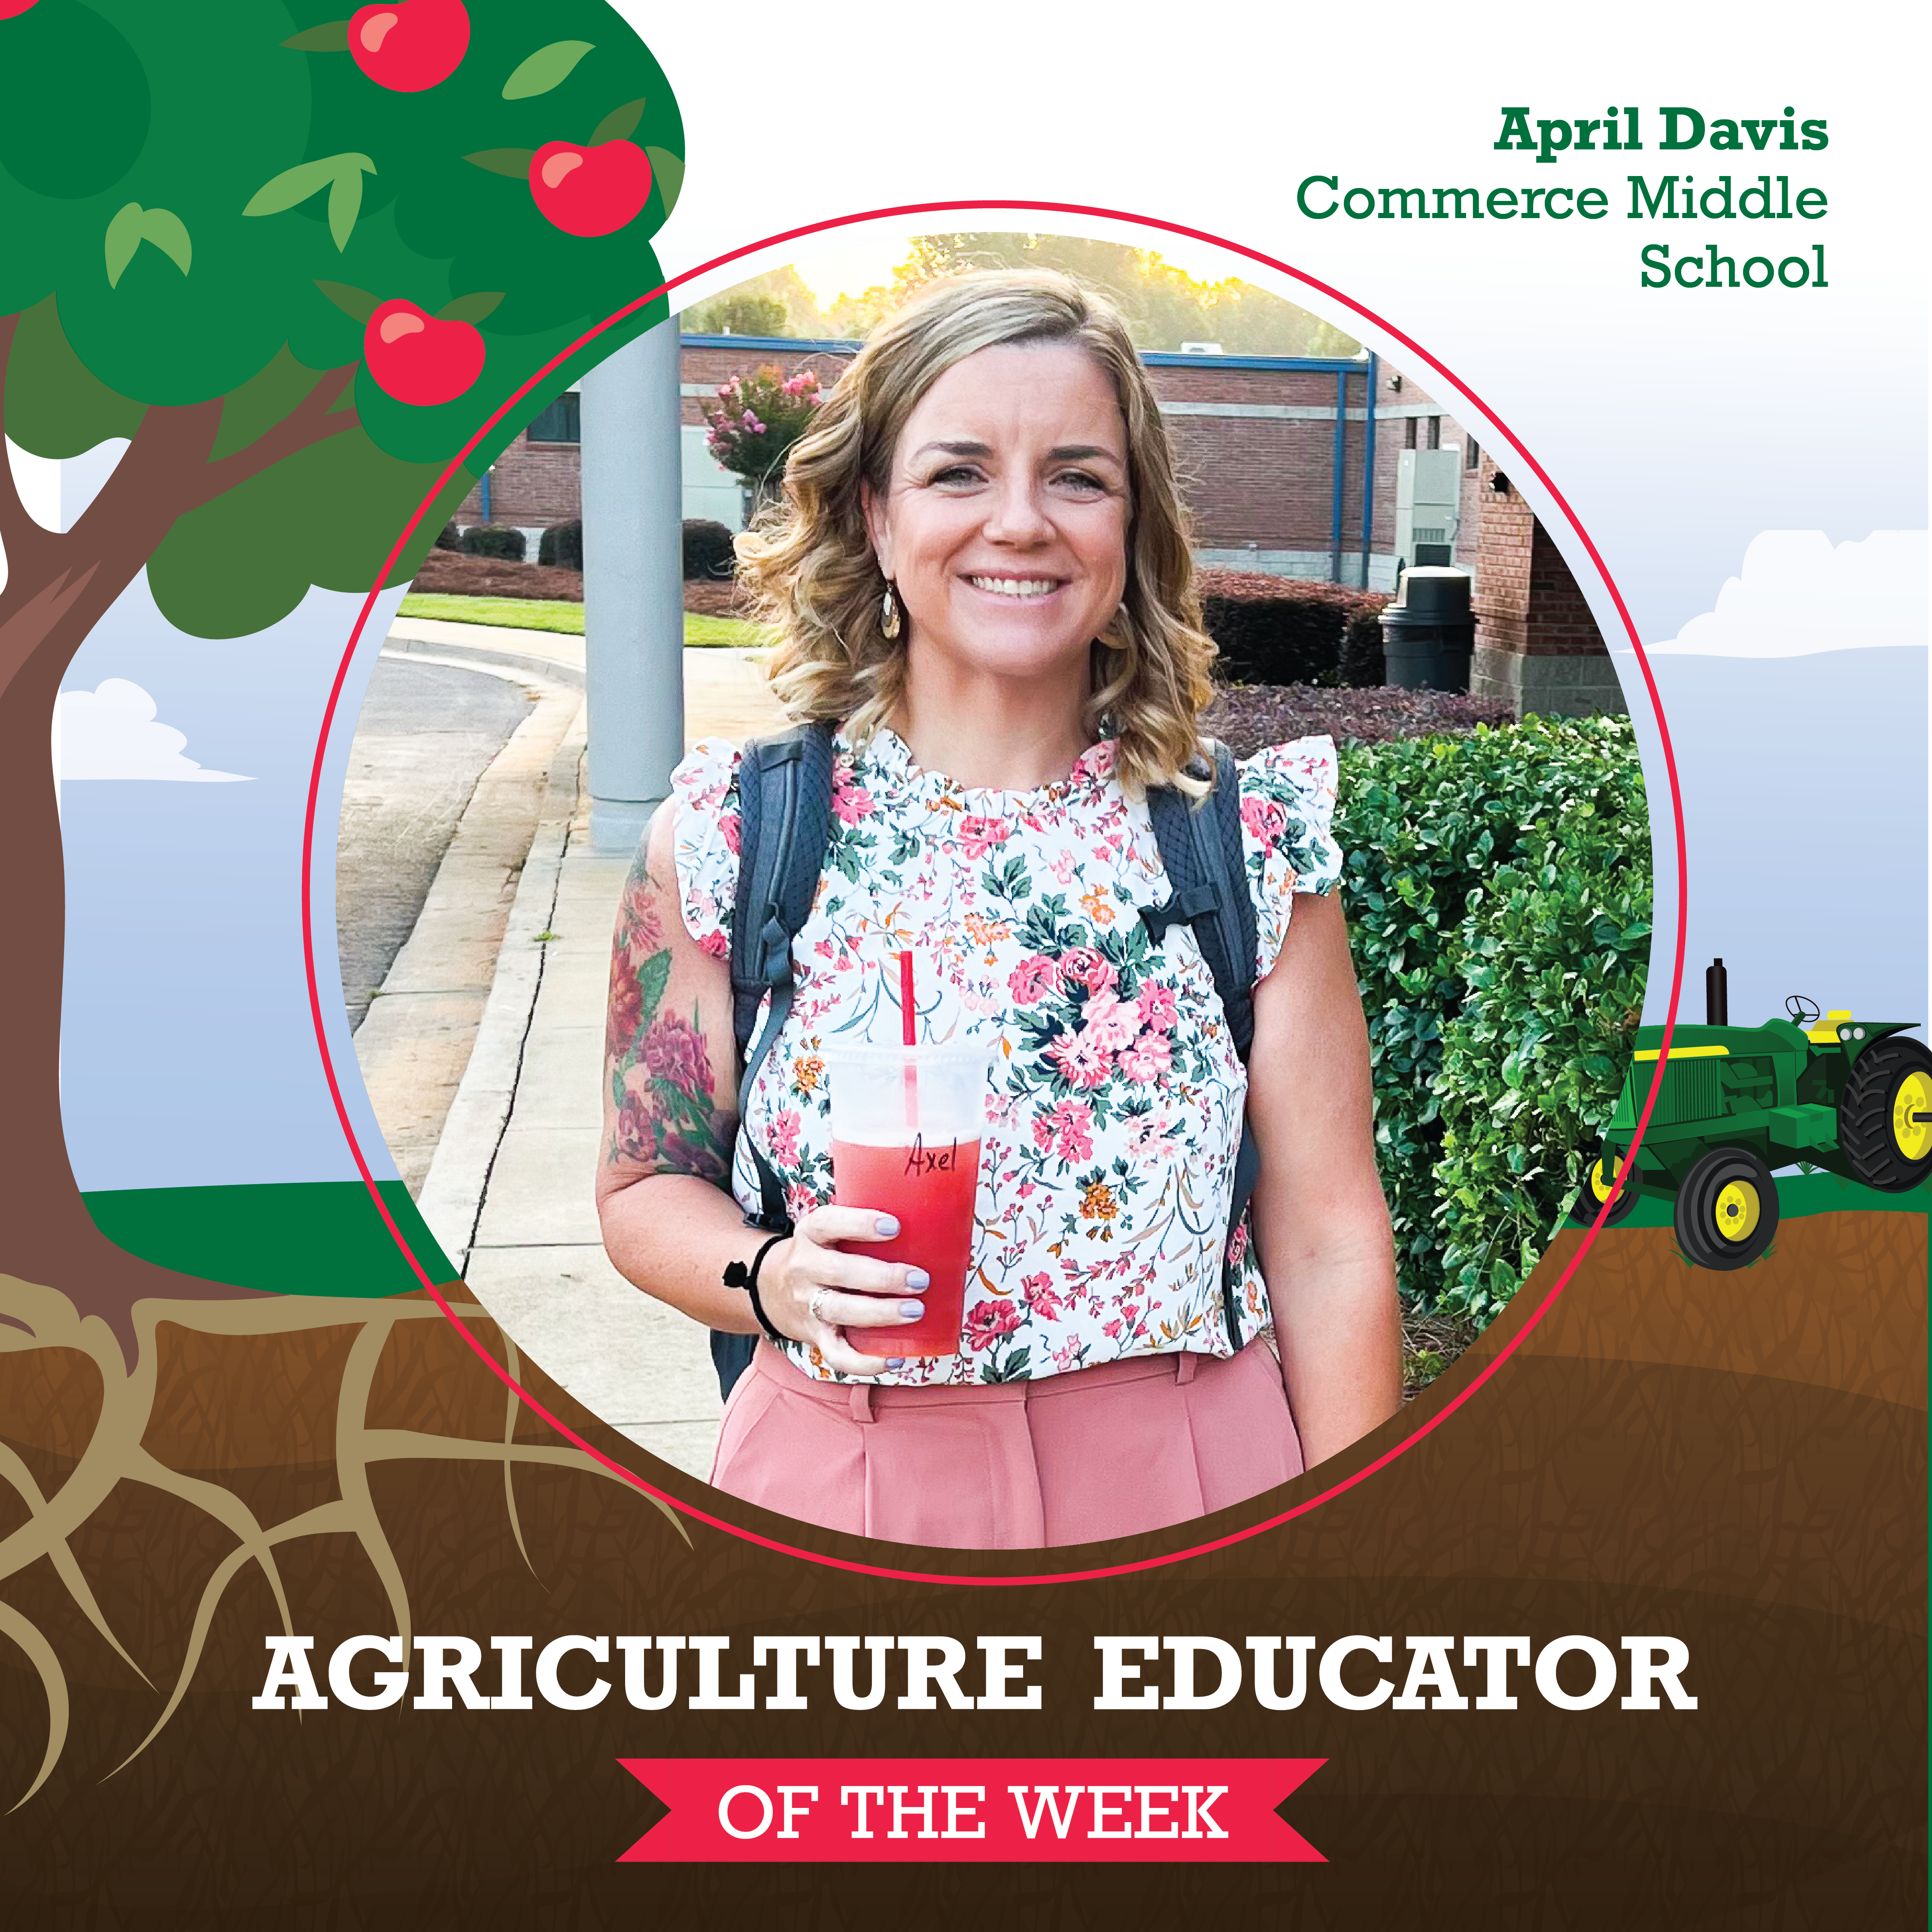 Agriculture Educator April Davis